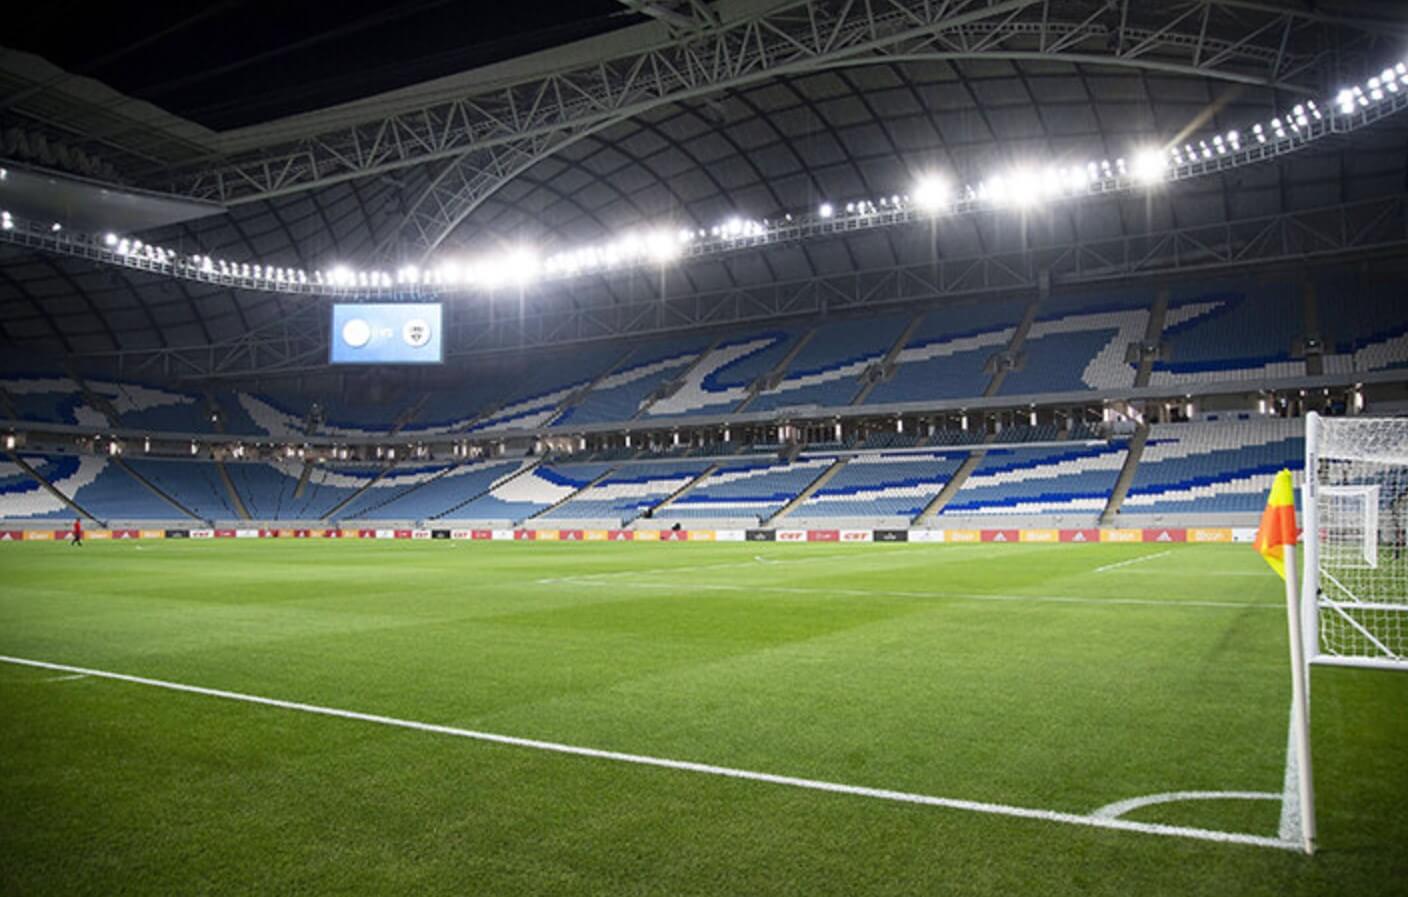 stadion Al Dzhanub chempionat mira 2022 katar futbol